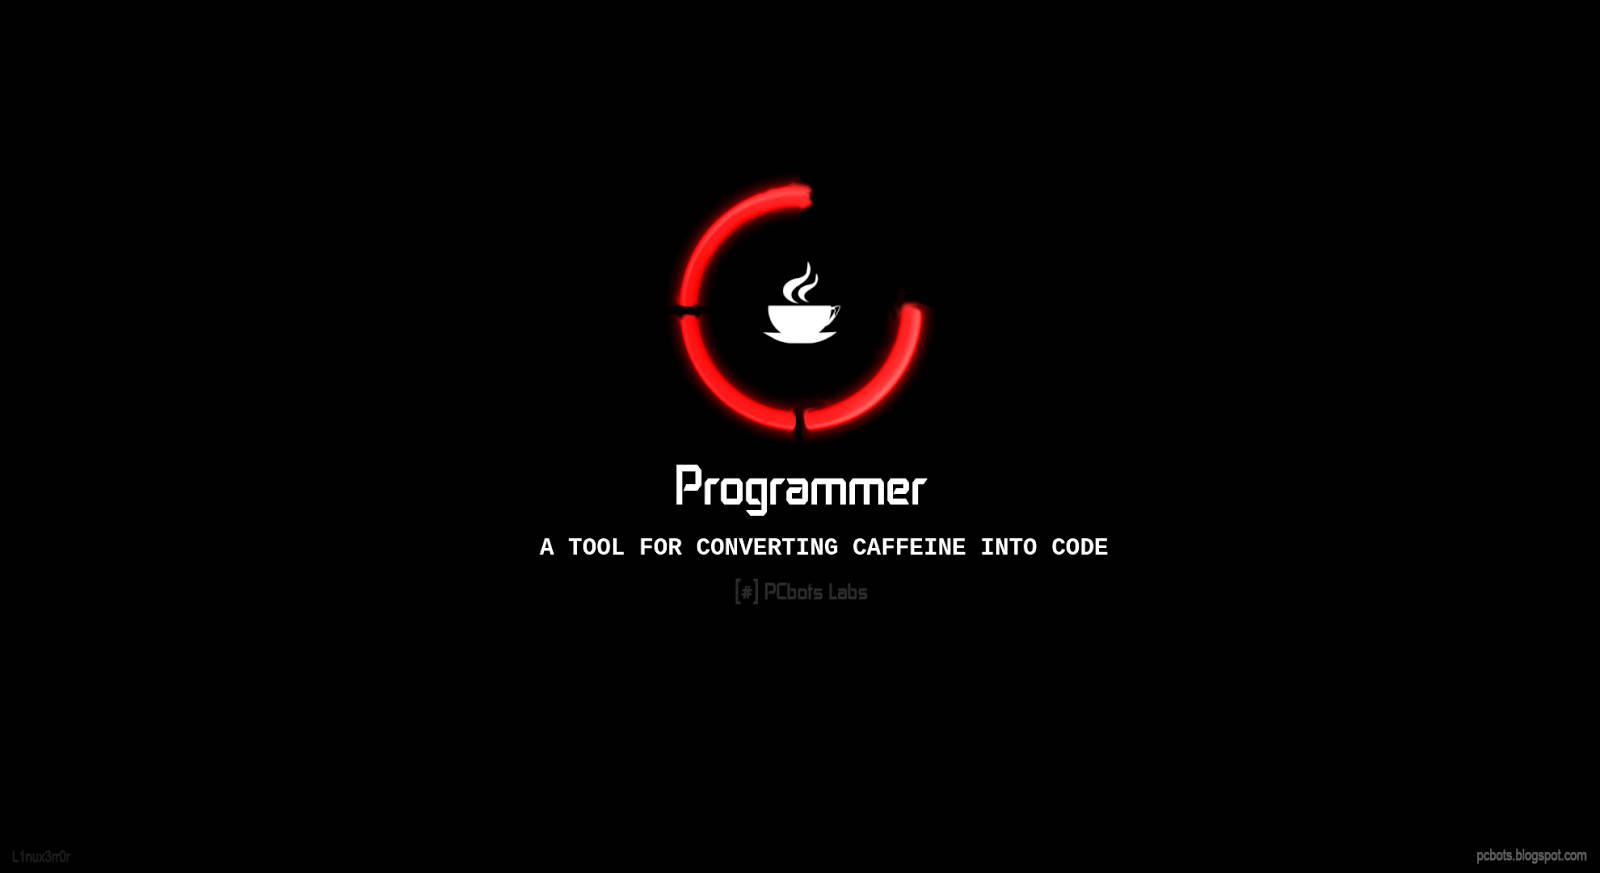 4k Programming Java Script Logo Wallpaper